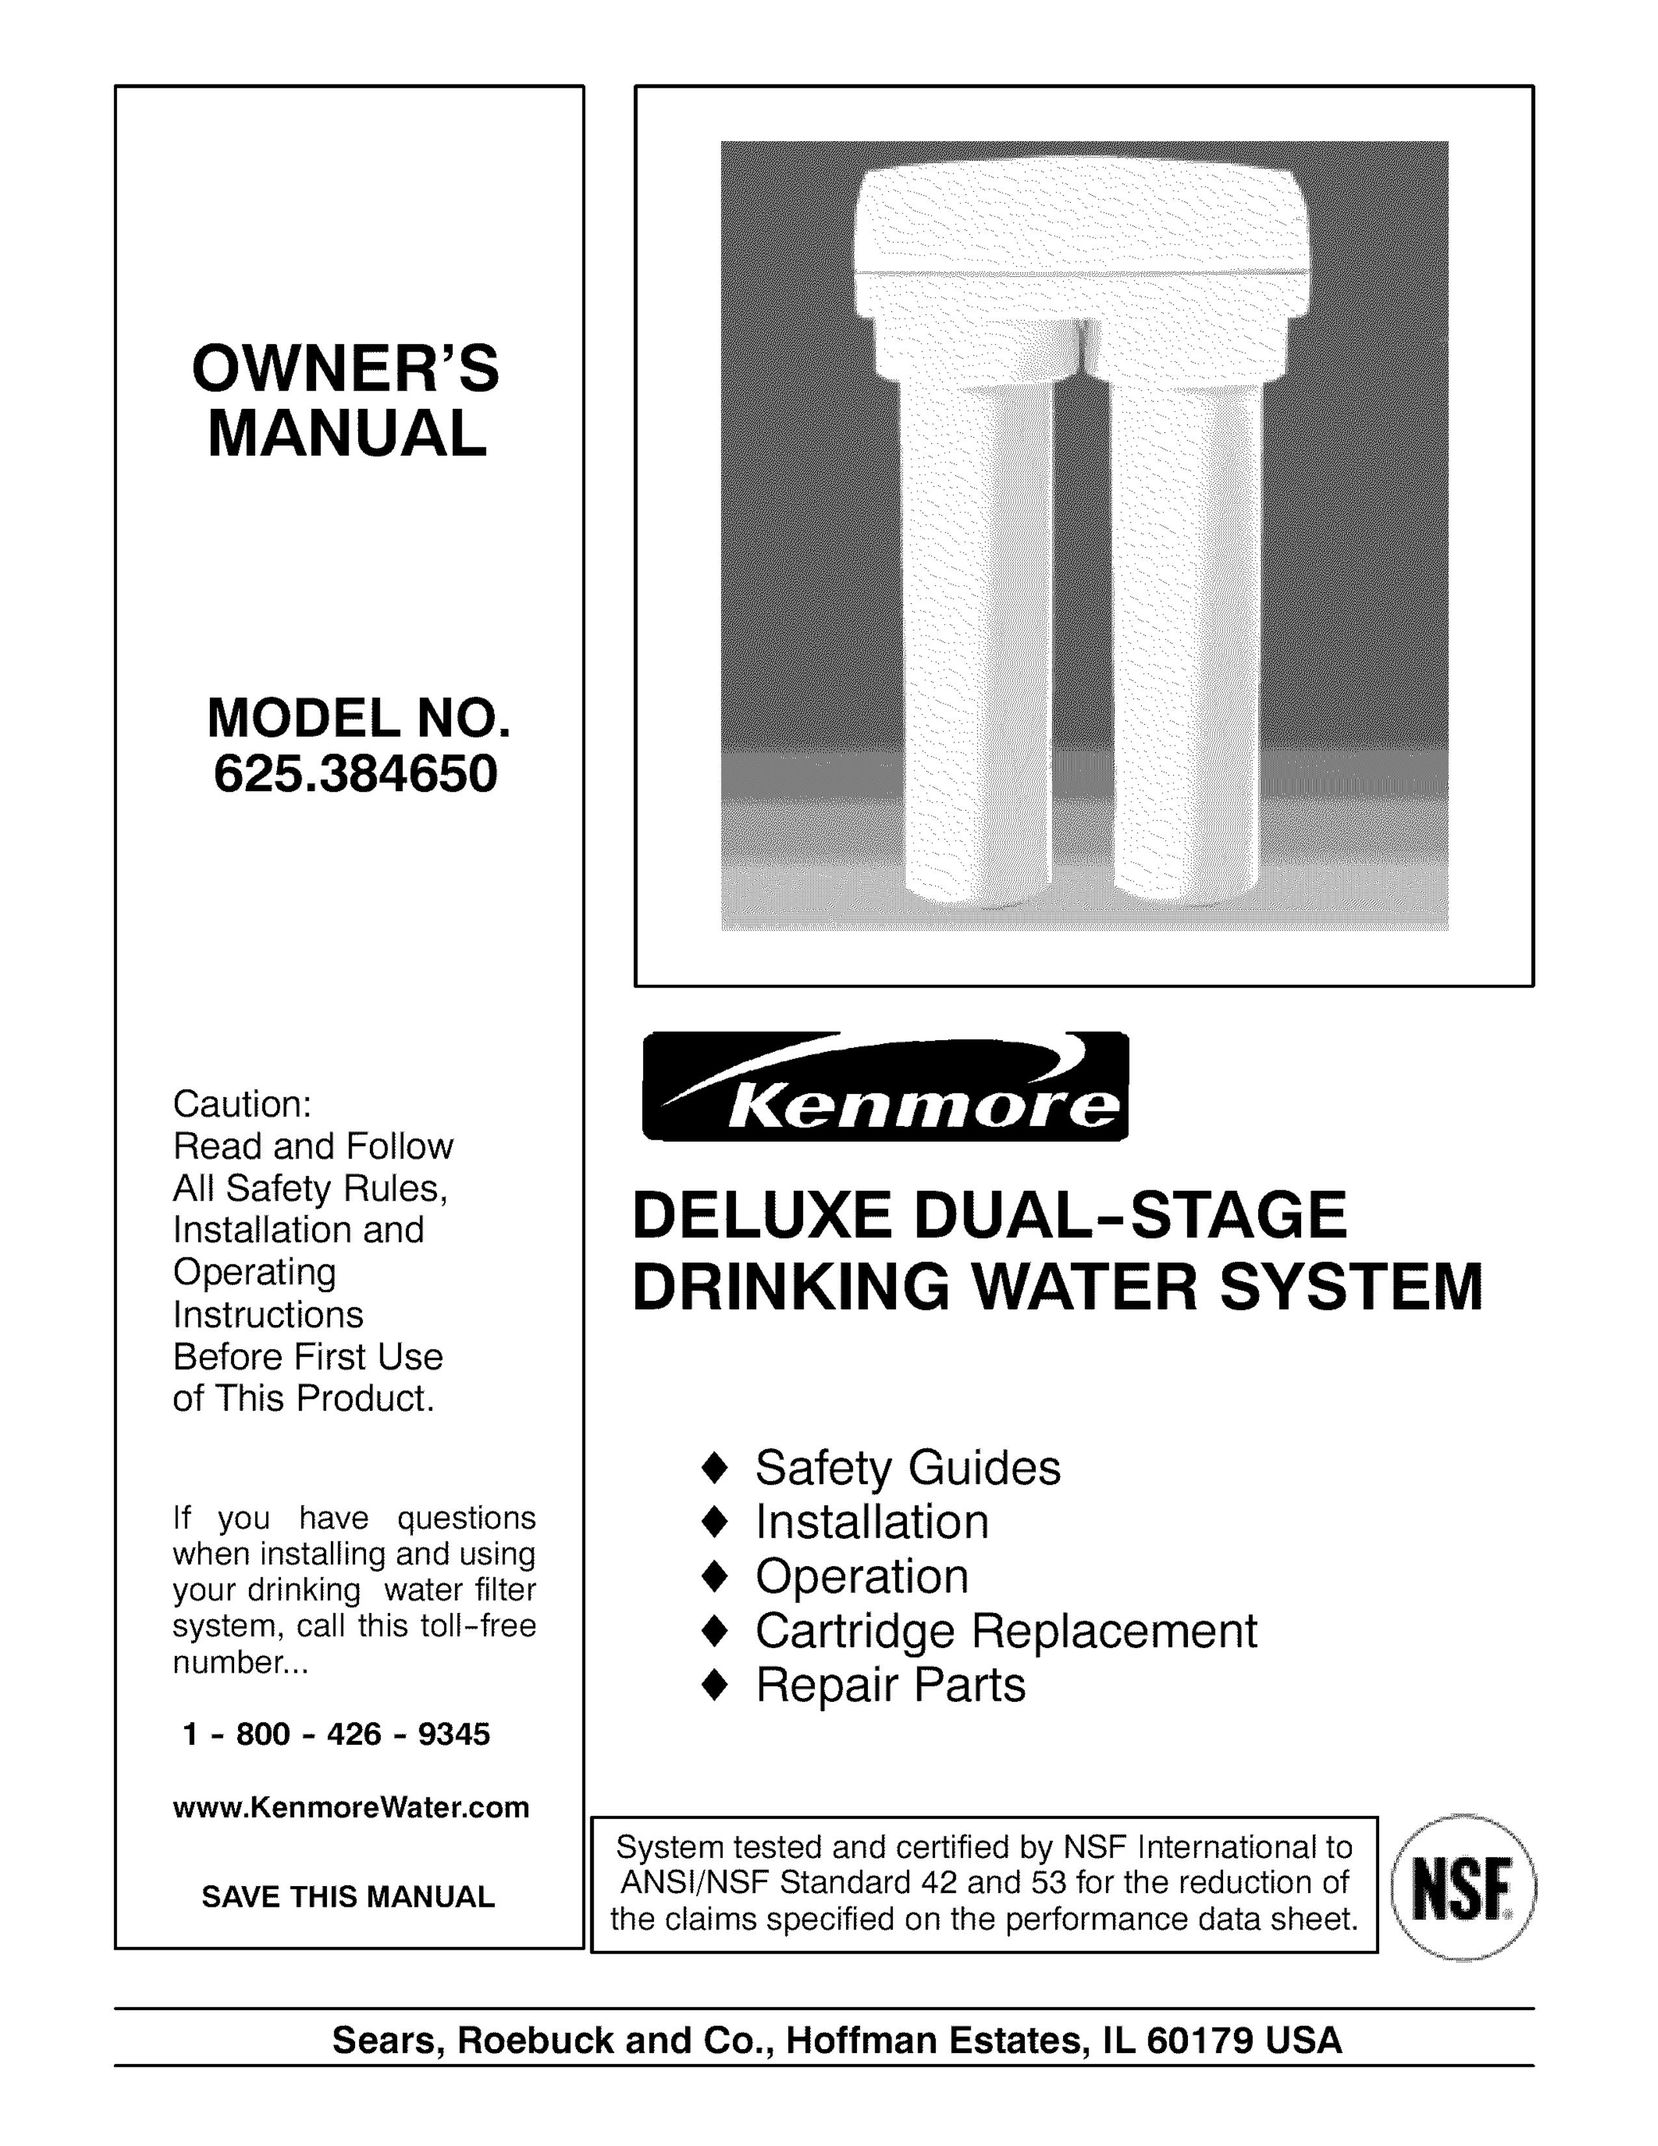 Kenmore 625.384650 Water System User Manual